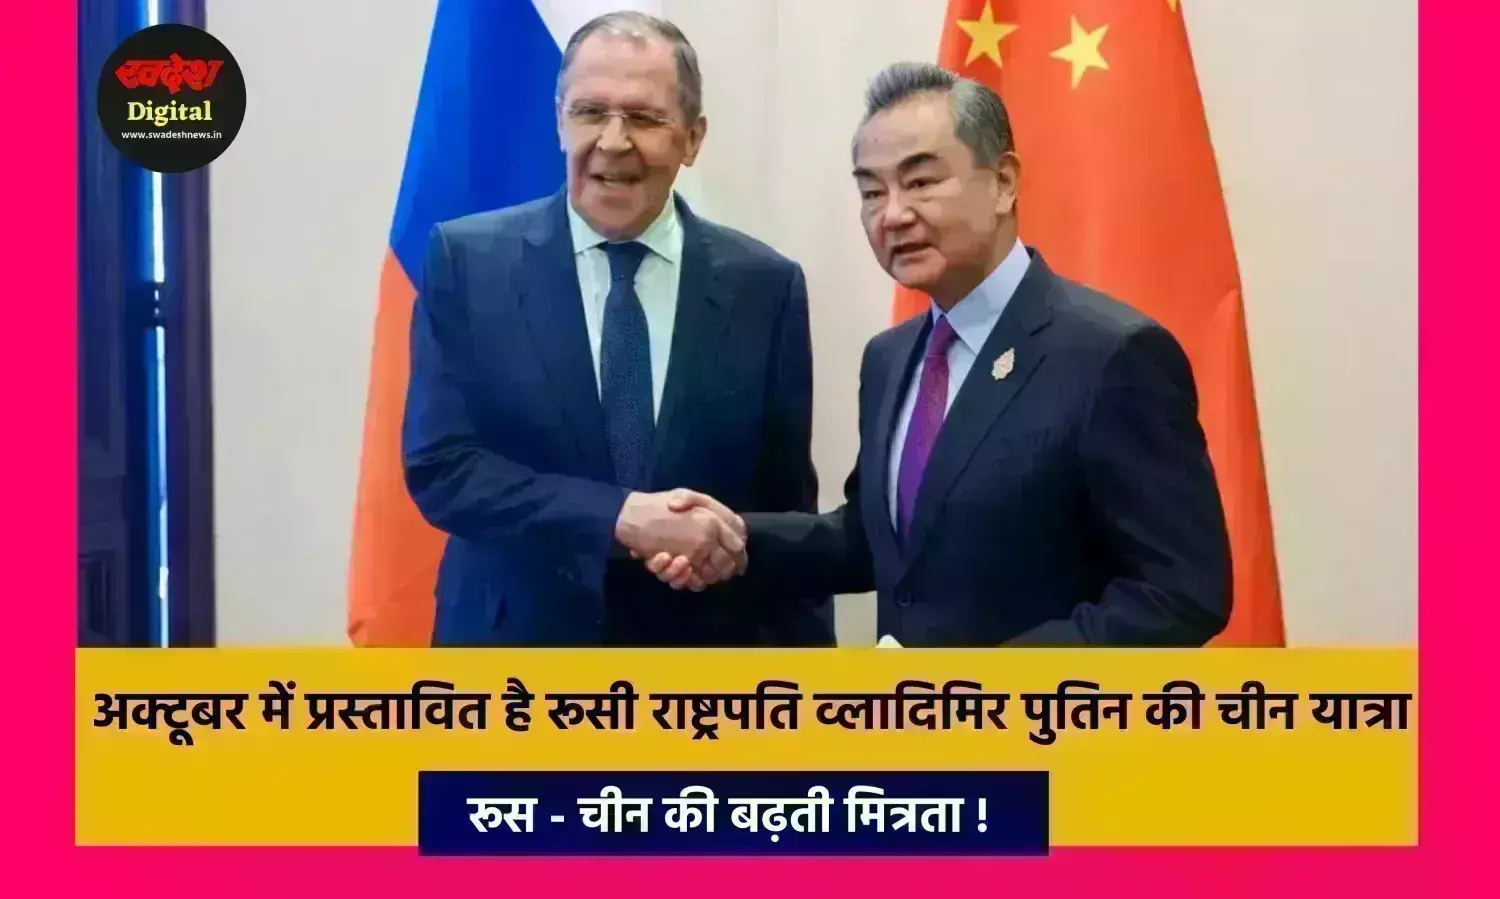 रूस - चीन की बढ़ती मित्रता ! चार दिवसीय यात्रा पर चीनी विदेश मंत्री पहुंचे मॉस्को